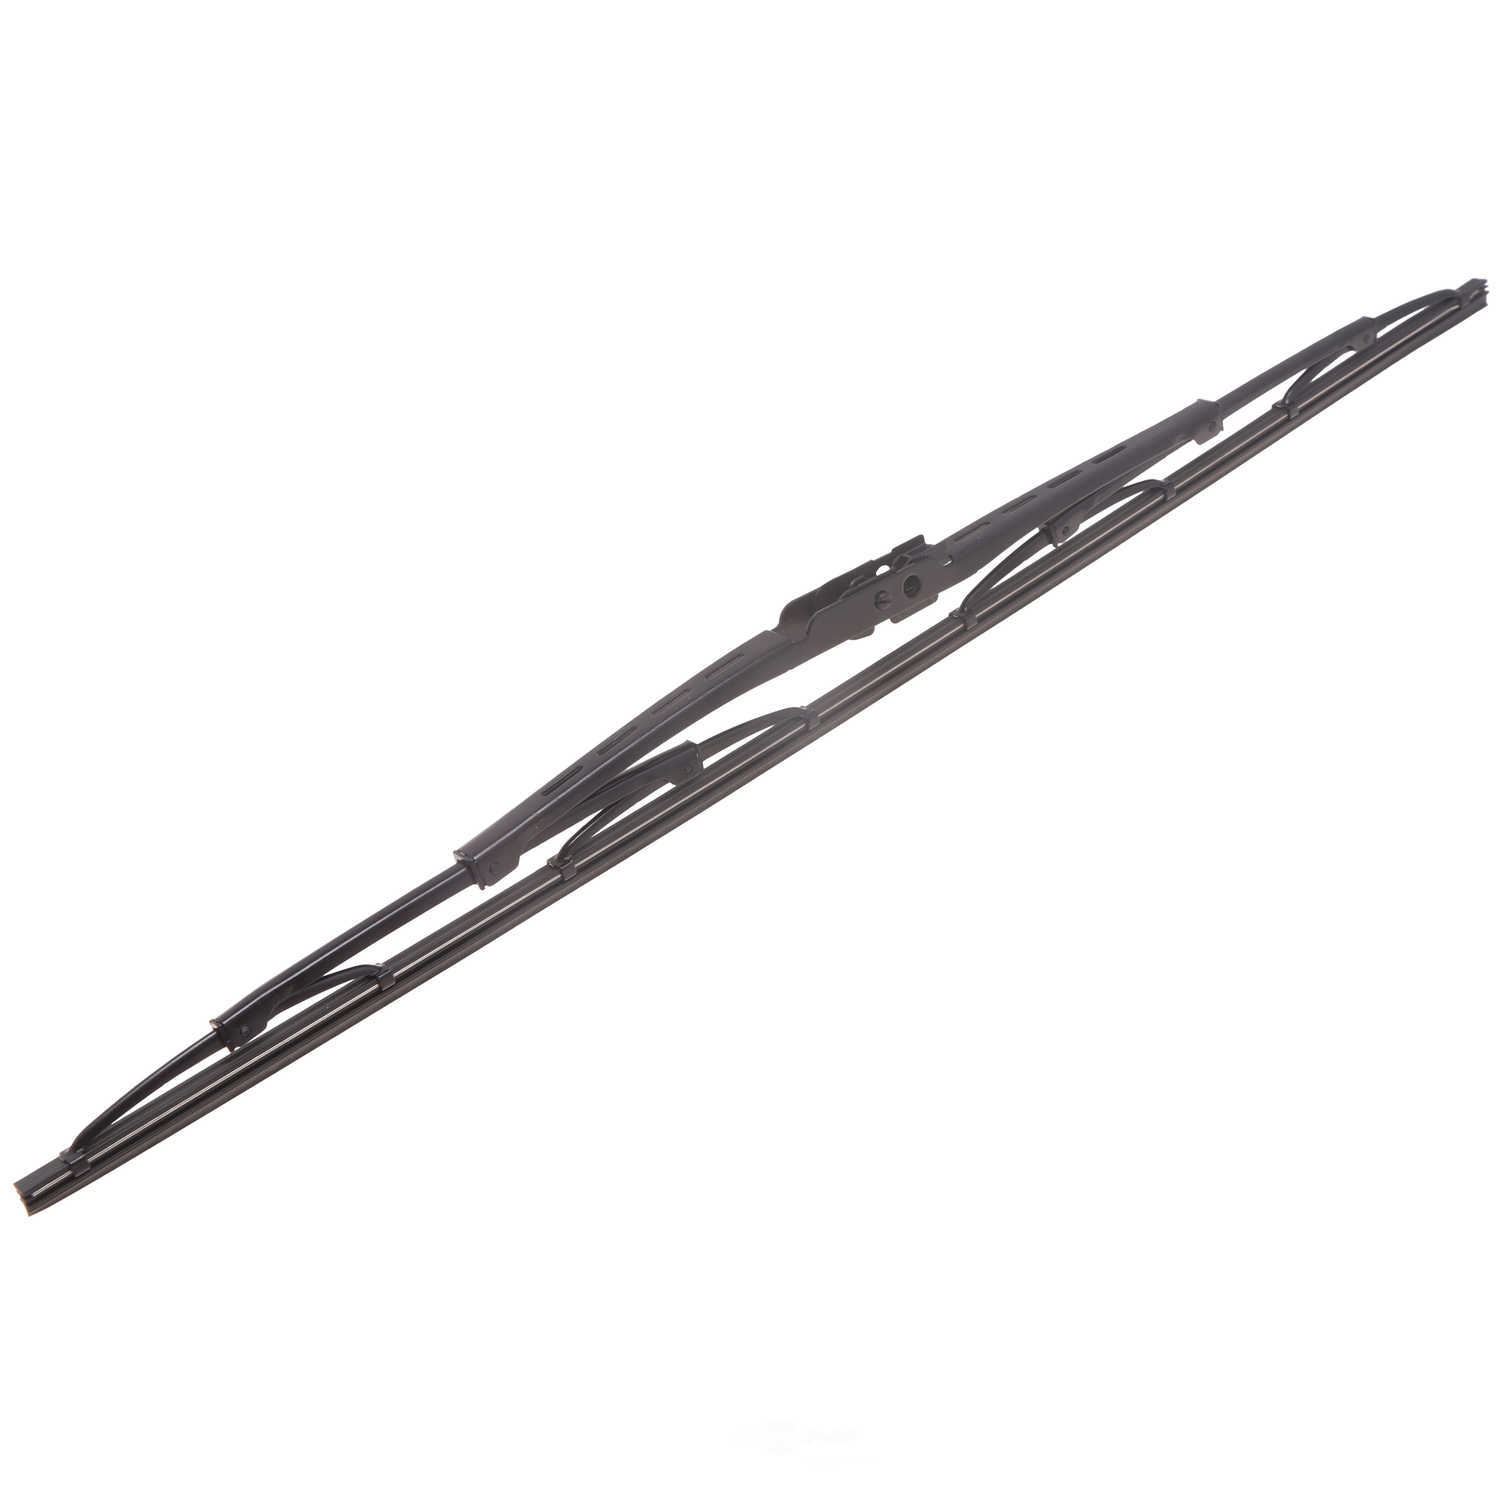 ANCO WIPER PRODUCTS - ANCO 14-Series Wiper Blade - ANC 14C-22